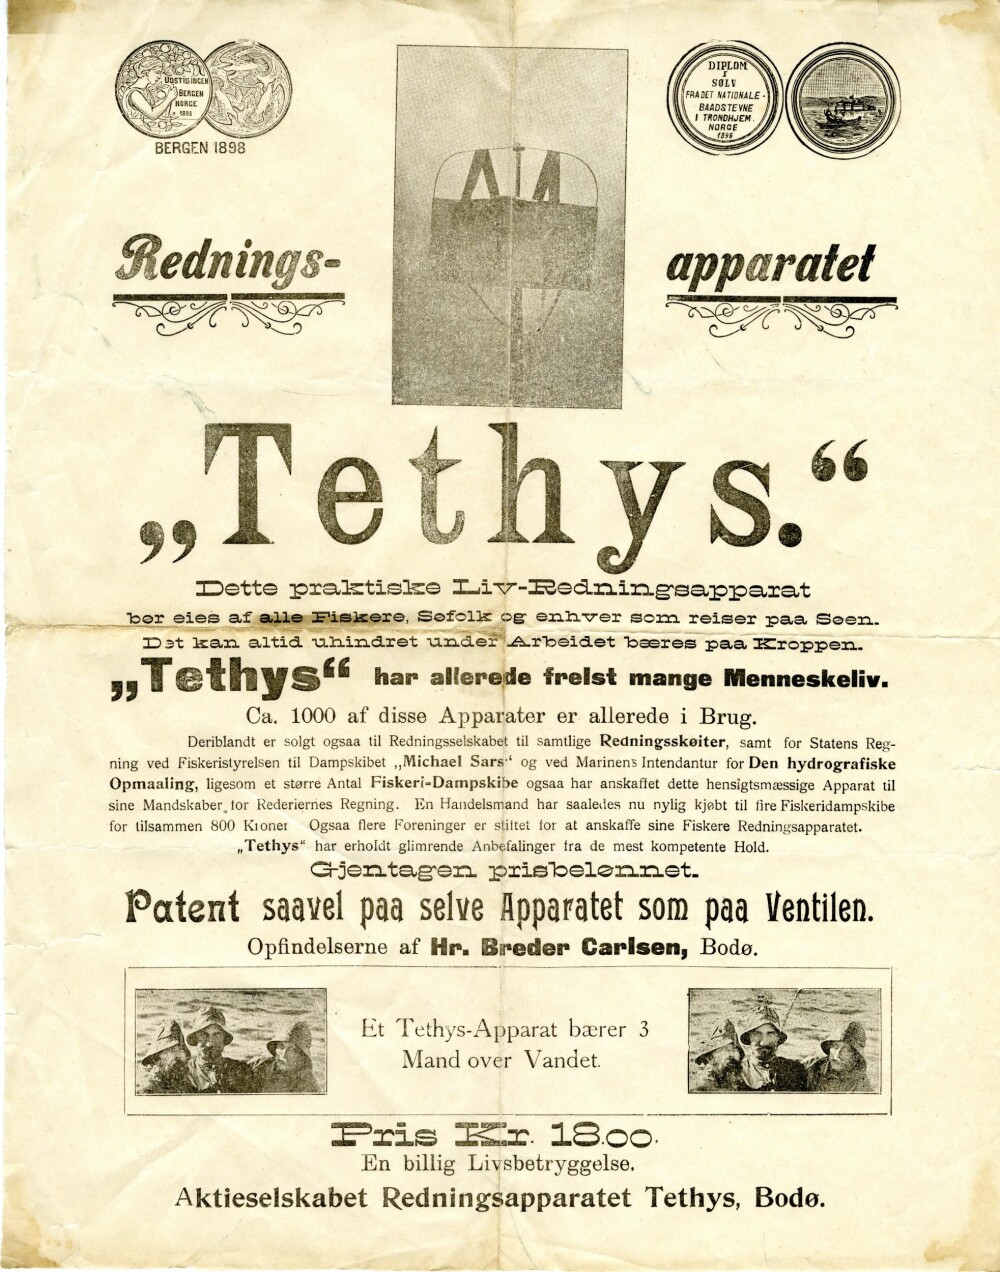 <b>PLAKAT:</b> Reklame for redningsapparatet Tethys som angivelig skal være solgt i cirka 1000 eksemplarer.